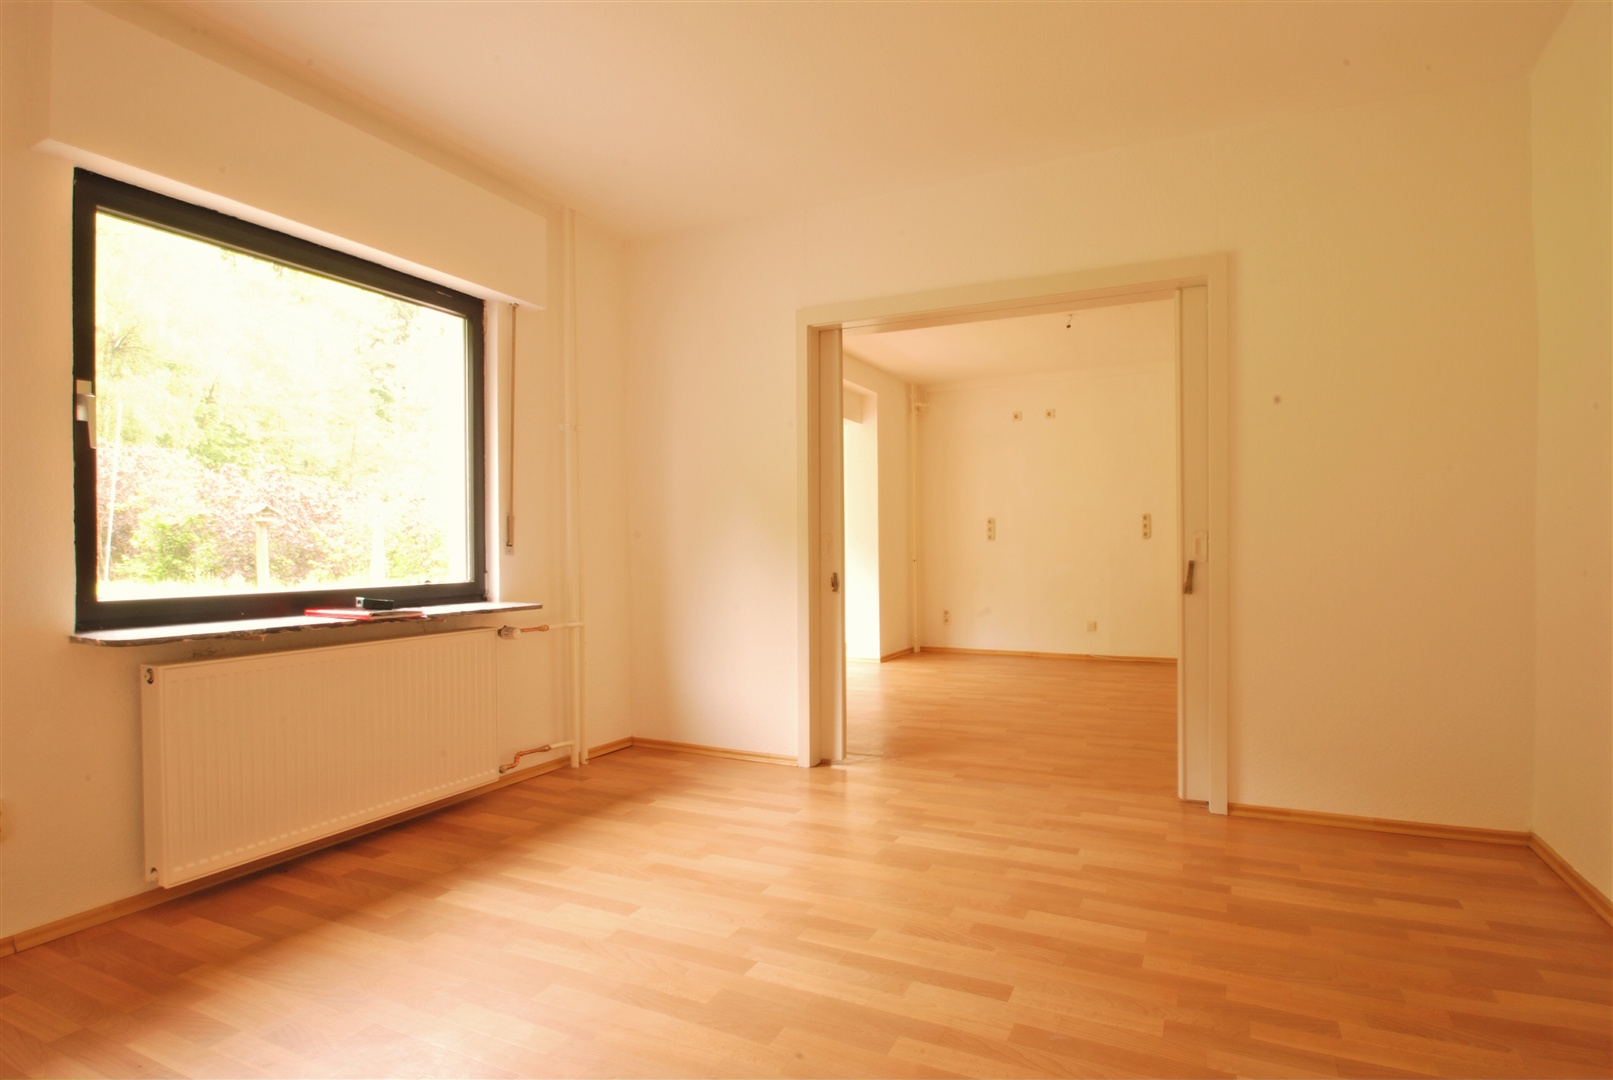 schlafzimmer/wohnraum im eg mit linoleum boden - Oliver Reifferscheid - Immobilienmakler Darmstadt